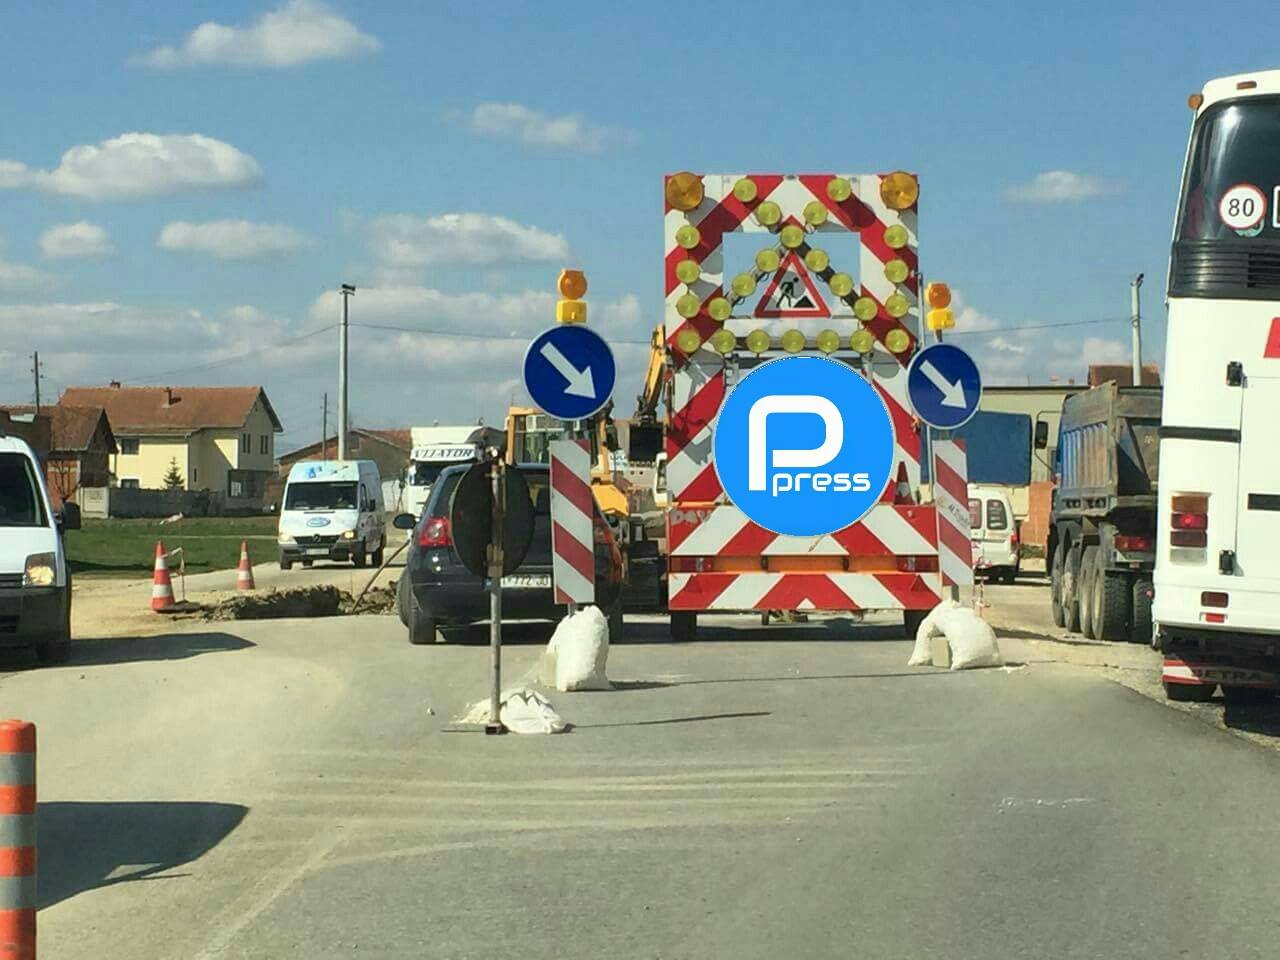  Deputetja e PDK-së kritikon mos finalizimin e rrugës Prishtinë-Podujevë